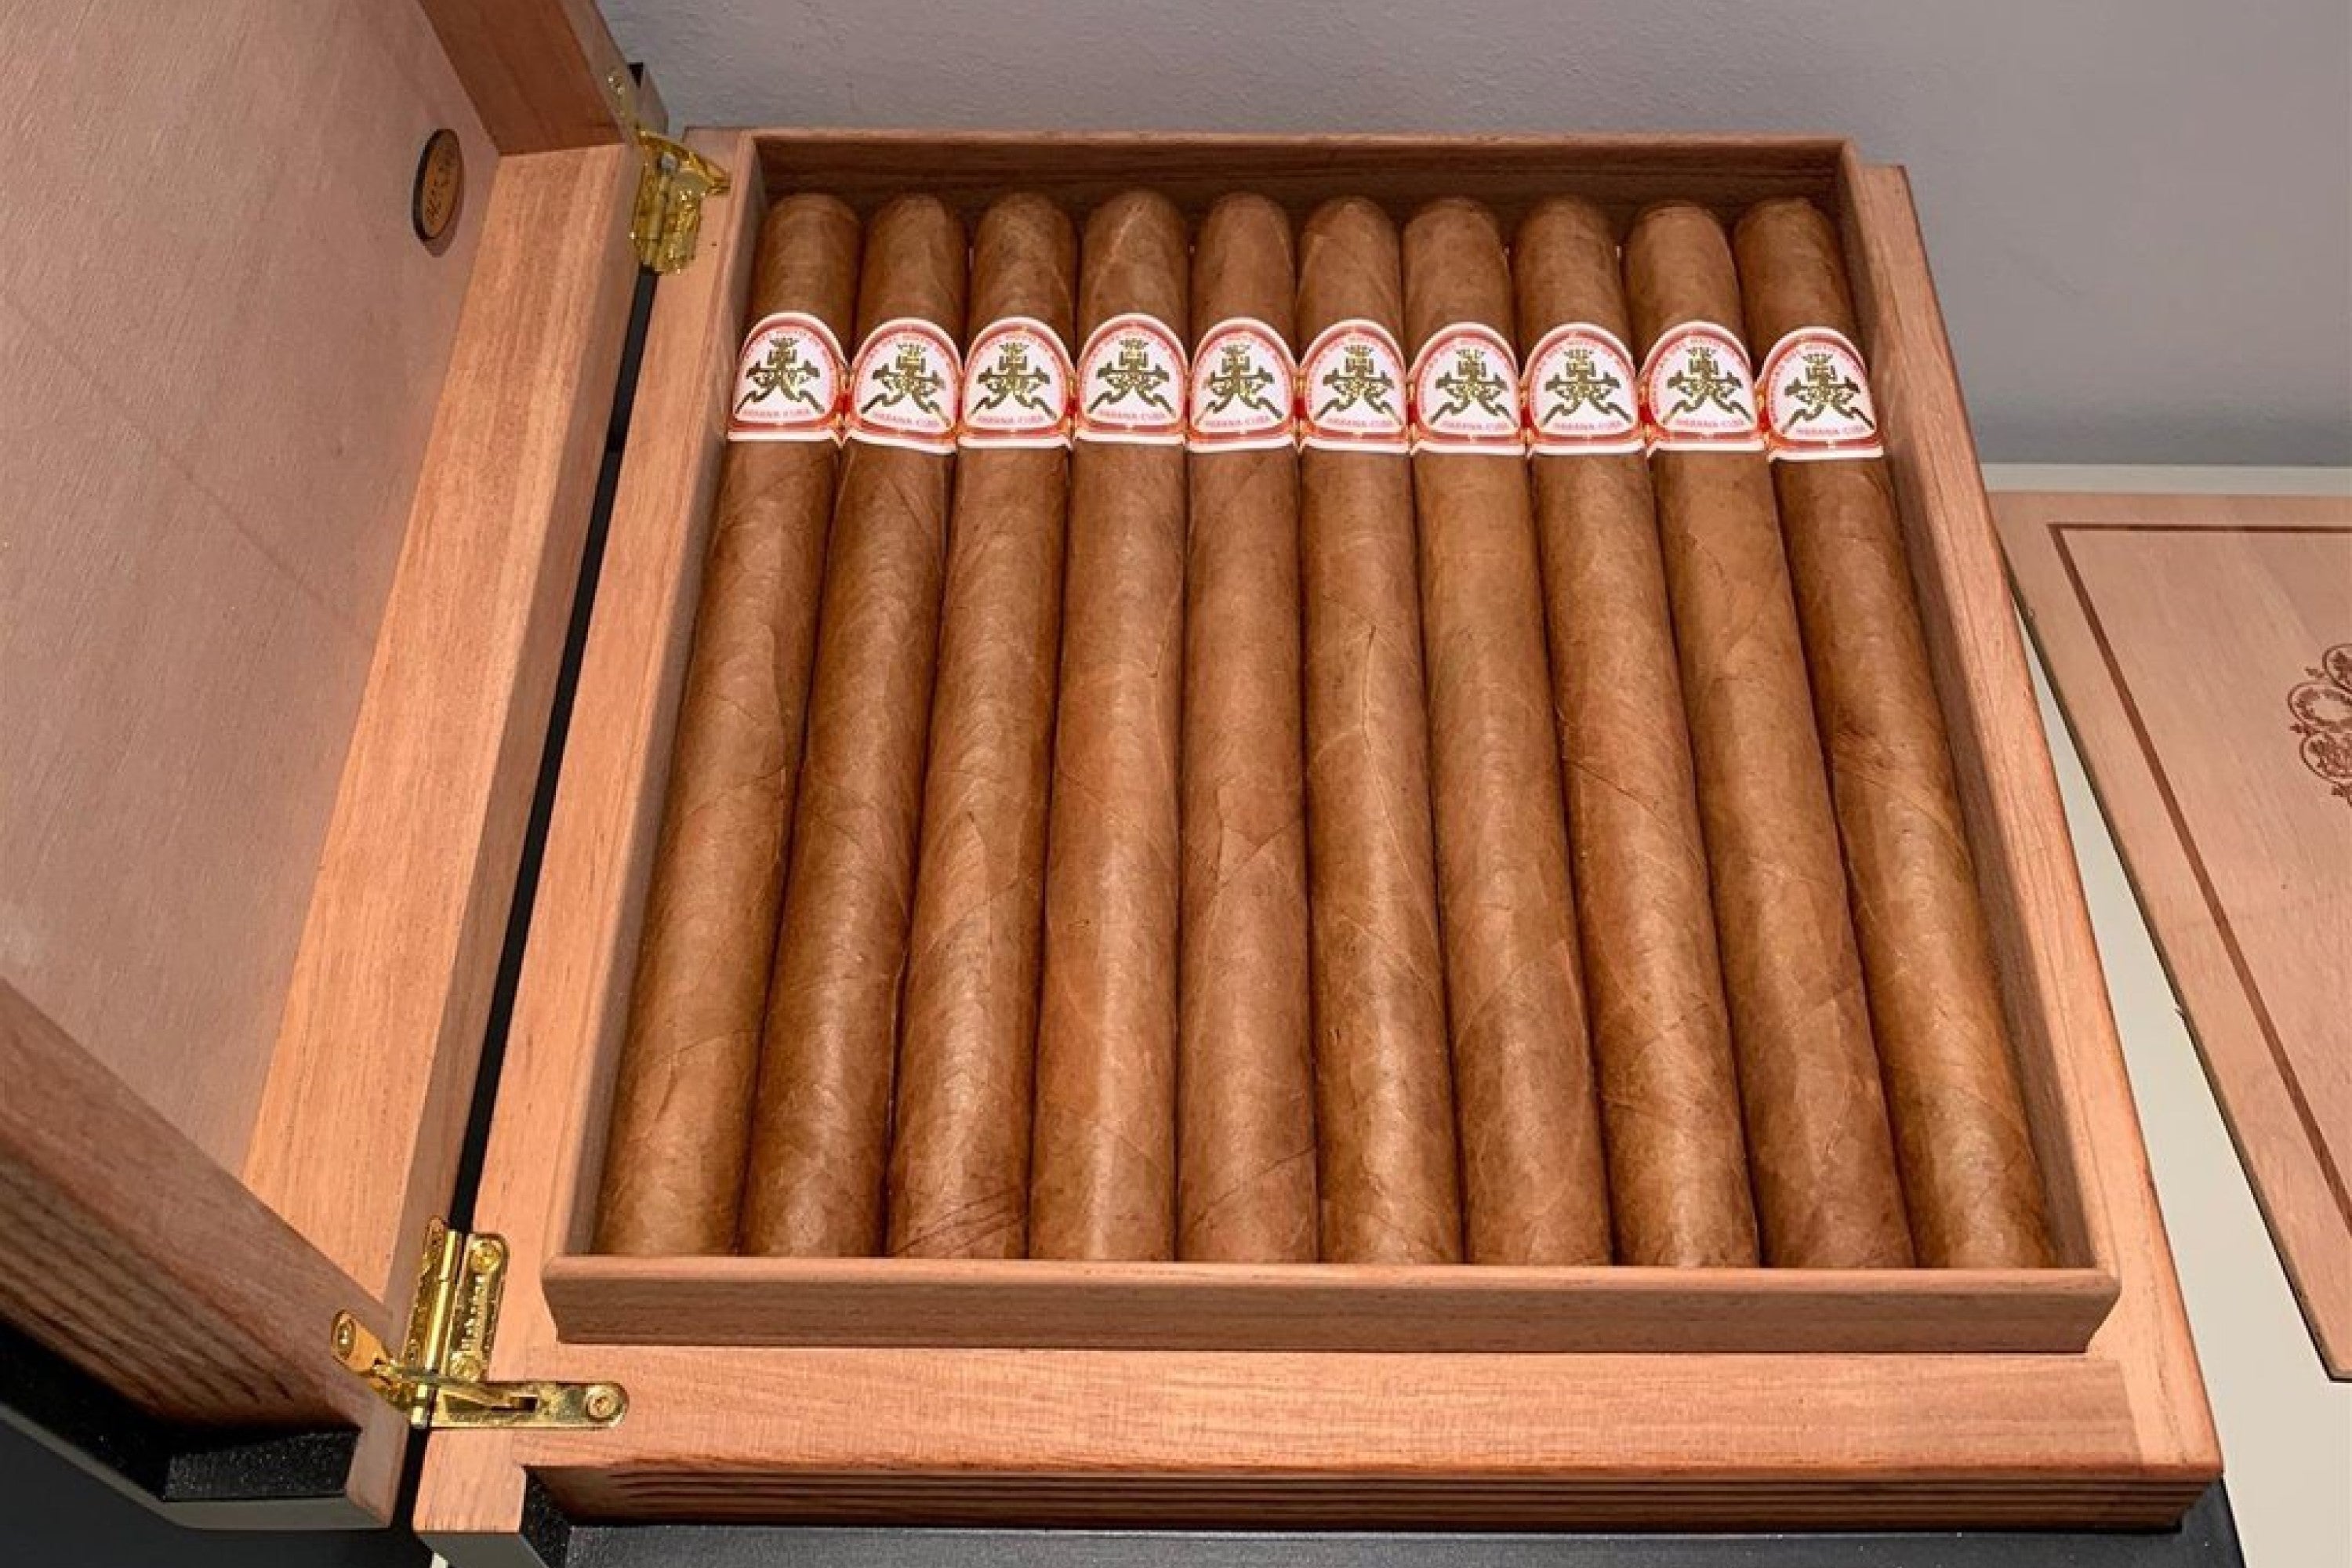 La Colección Habanos - puros cubanos extremadamente raros y coleccionables  - EGM Cigars